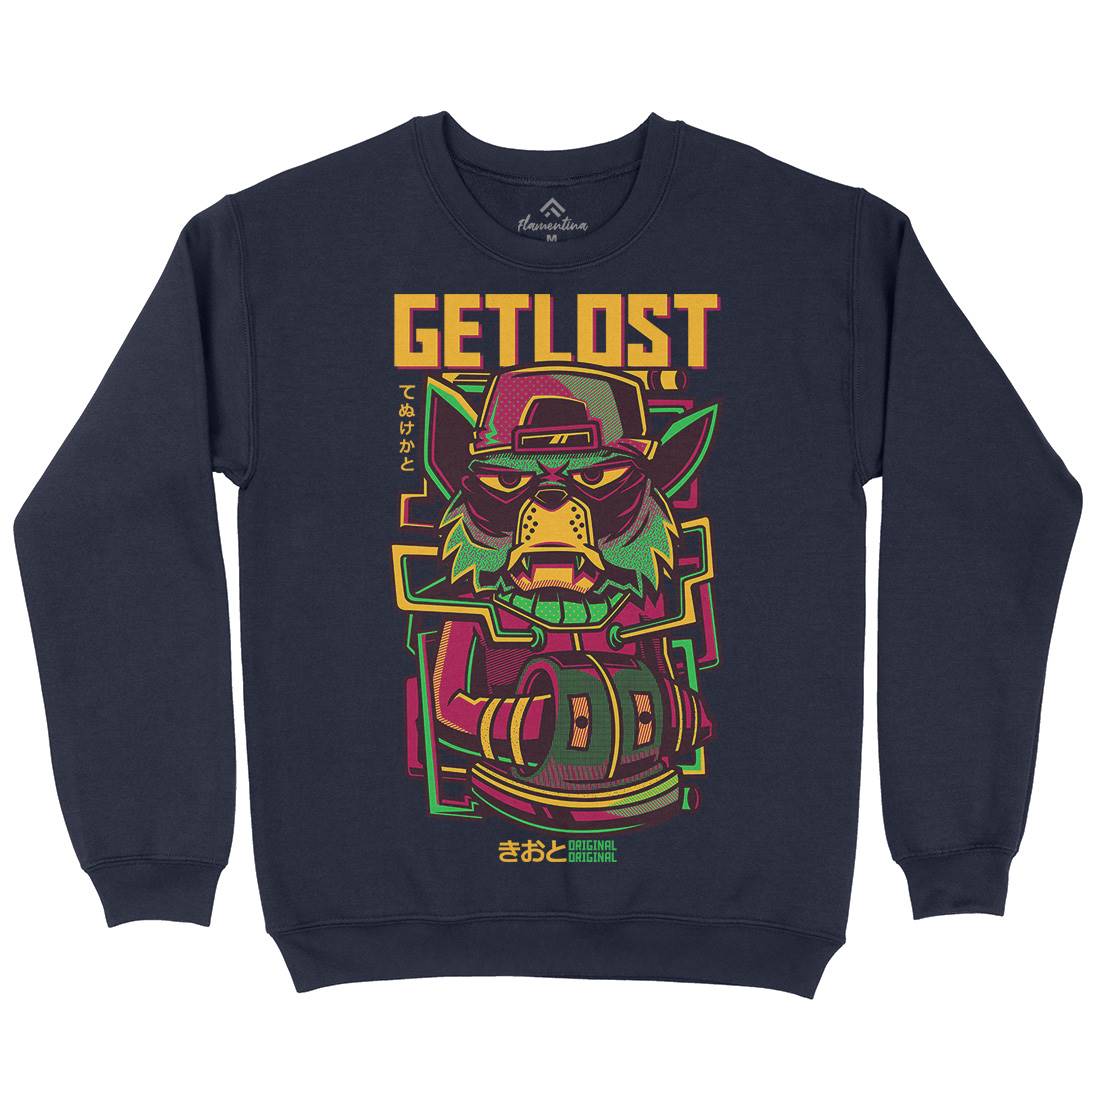 Get Lost Mens Crew Neck Sweatshirt Animals D793